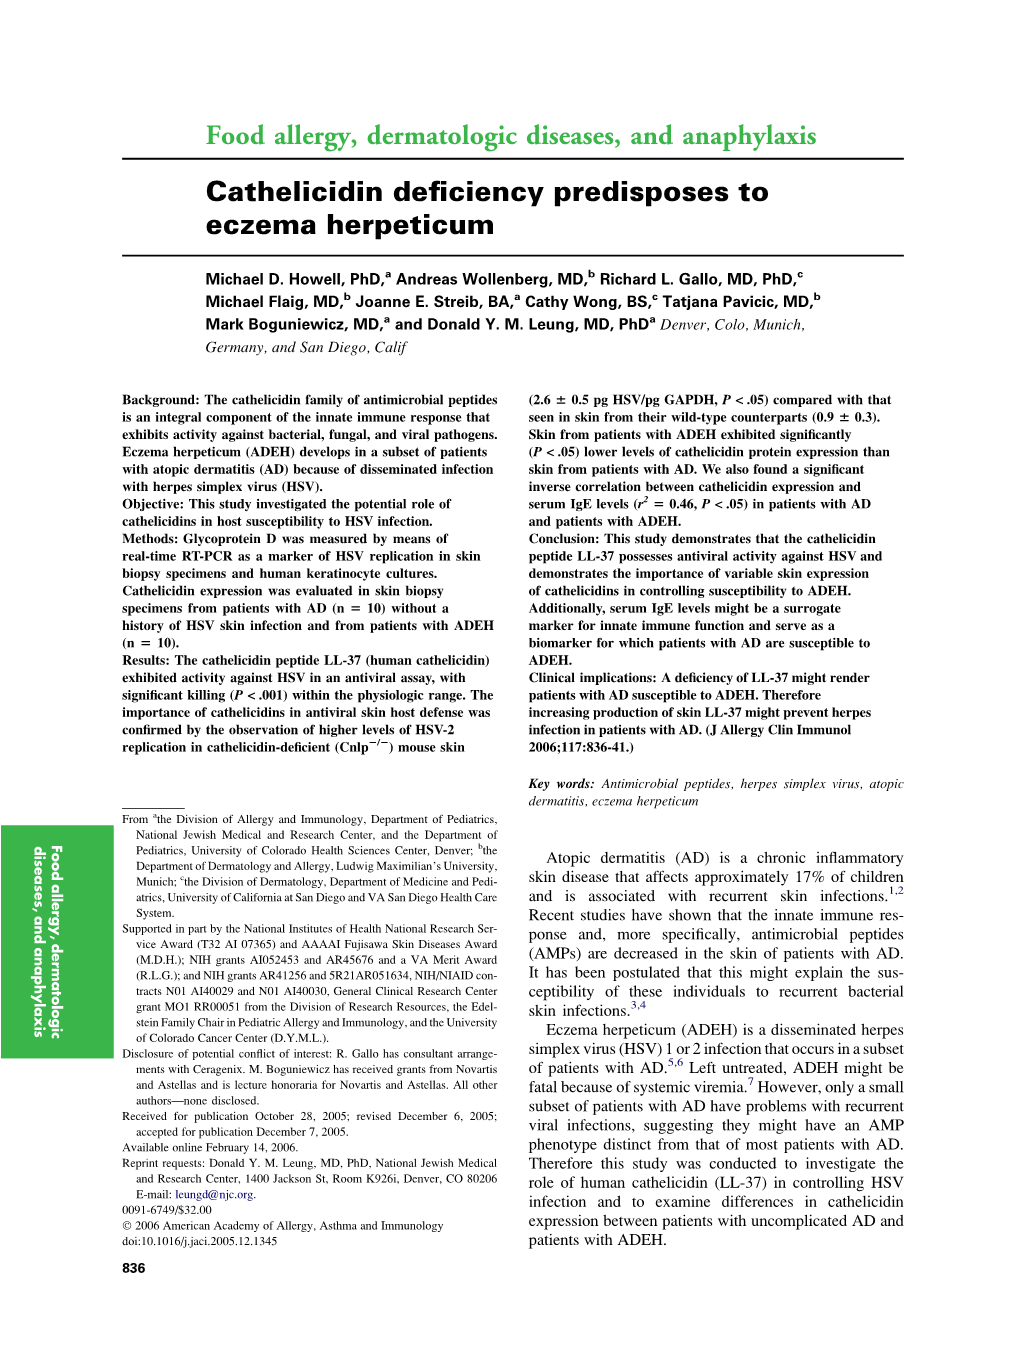 Cathelicidin Deficiency Predisposes to Eczema Herpeticum